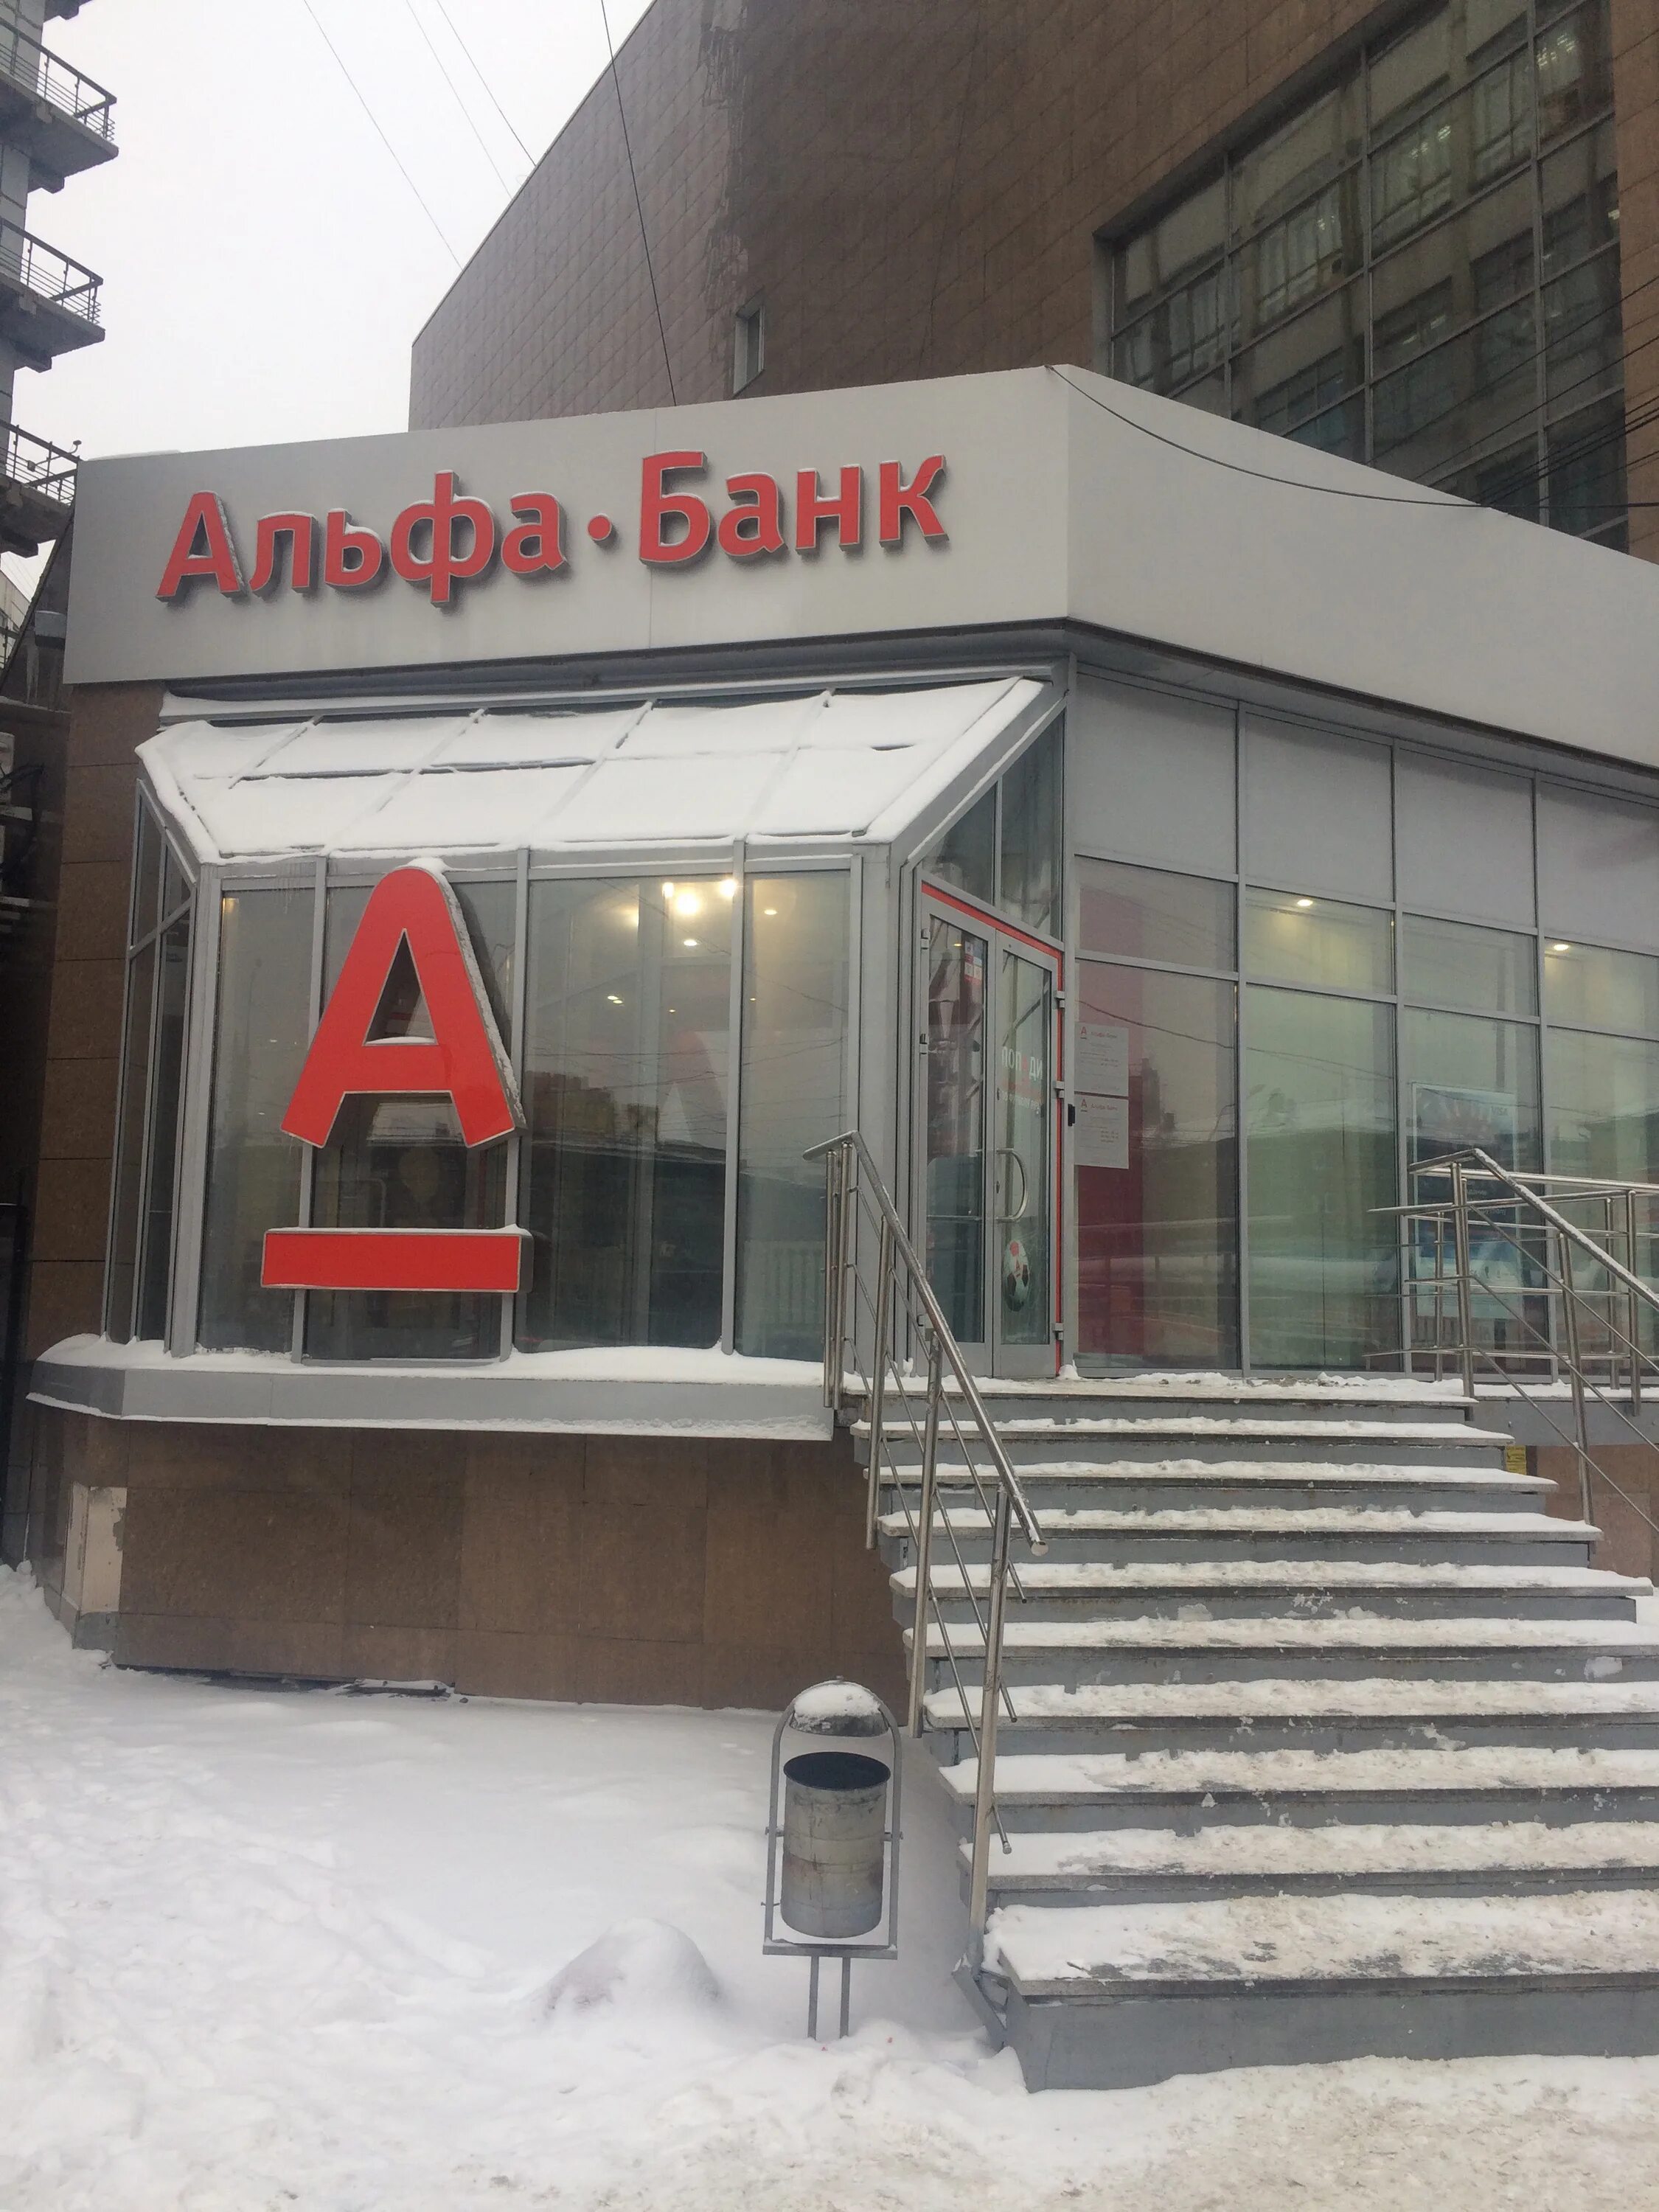 Альфа банк новосибирск телефон